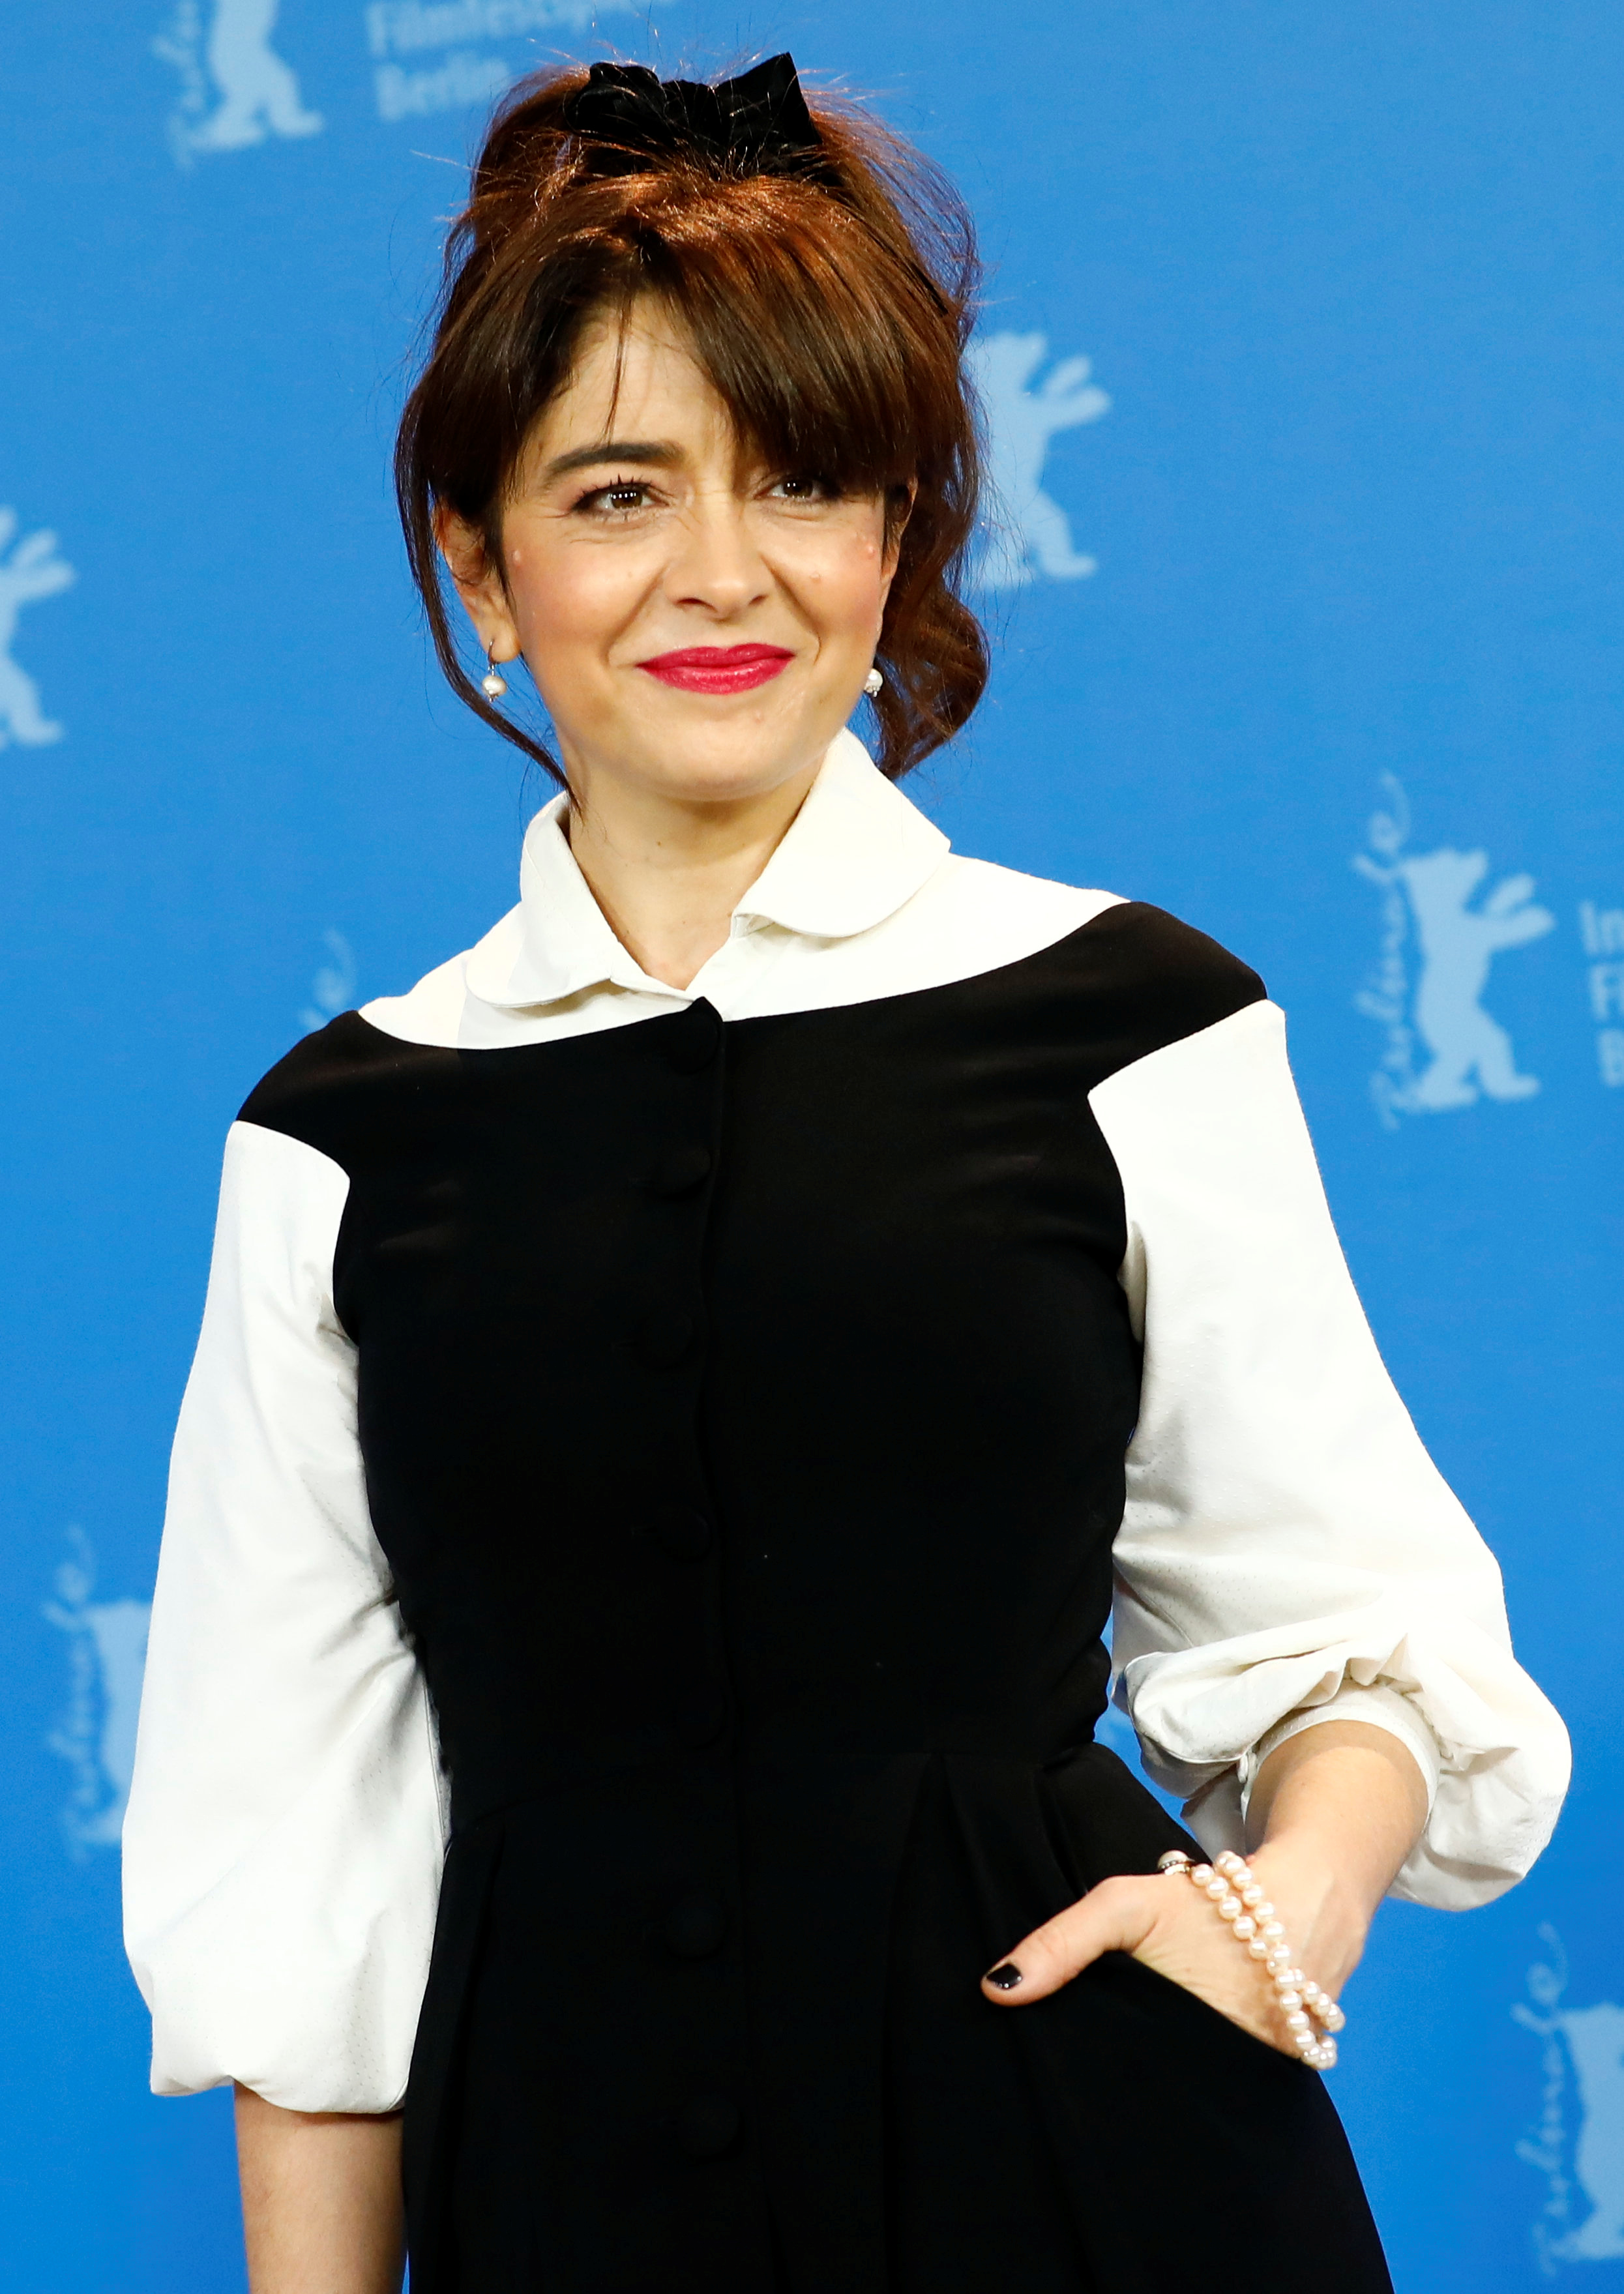 Erica Rivas en el 70th Festival Internacional de Berlín, donde obtuvo muchos elogios y repercusiones por su rol en El Prófugo